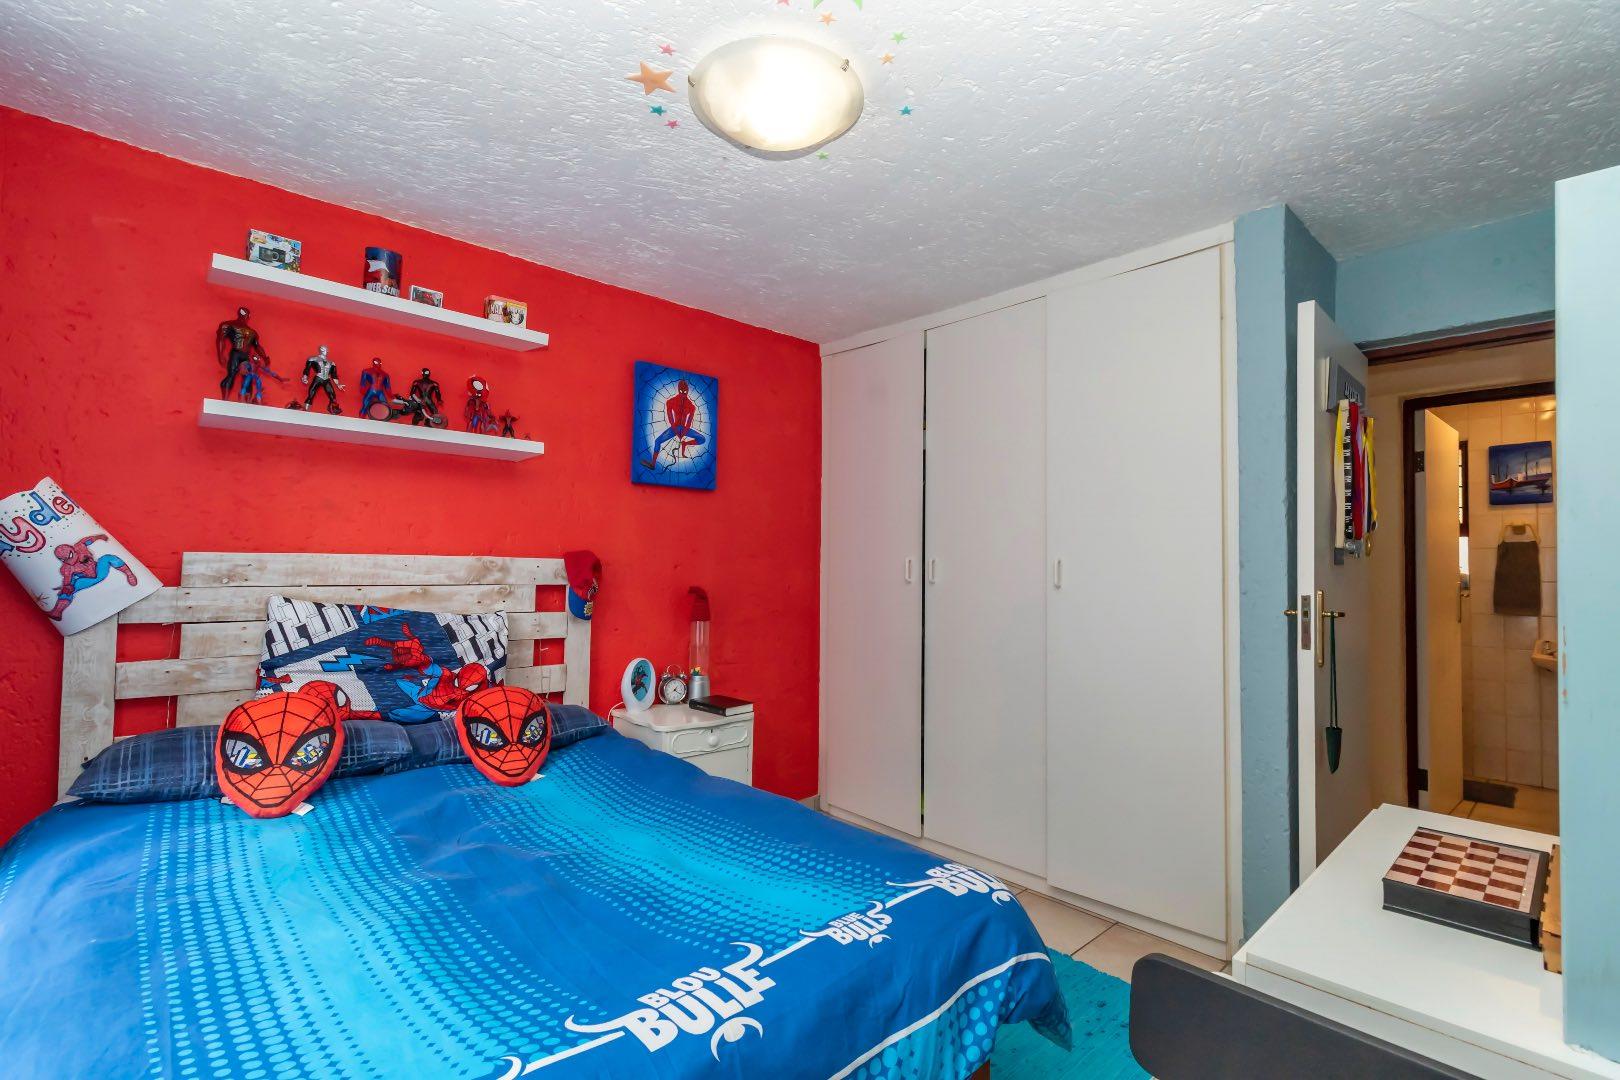 5 Bedroom Property for Sale in Radiokop Gauteng